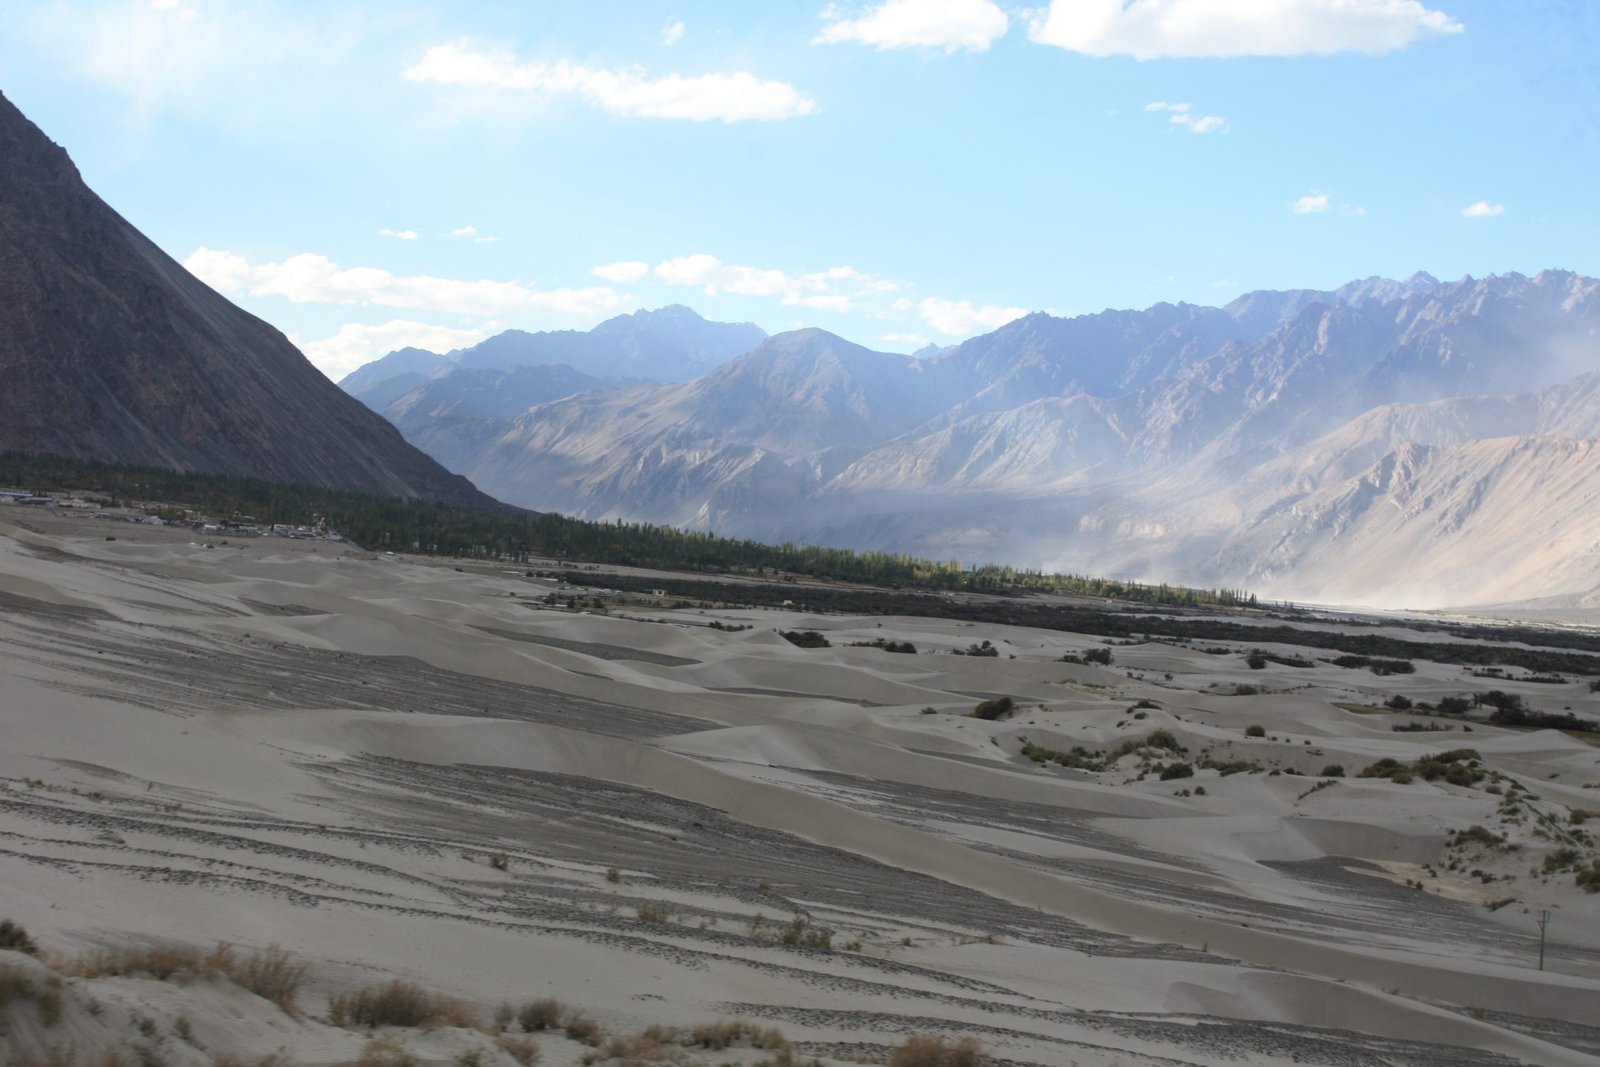 Nubra Valley in Ladakh